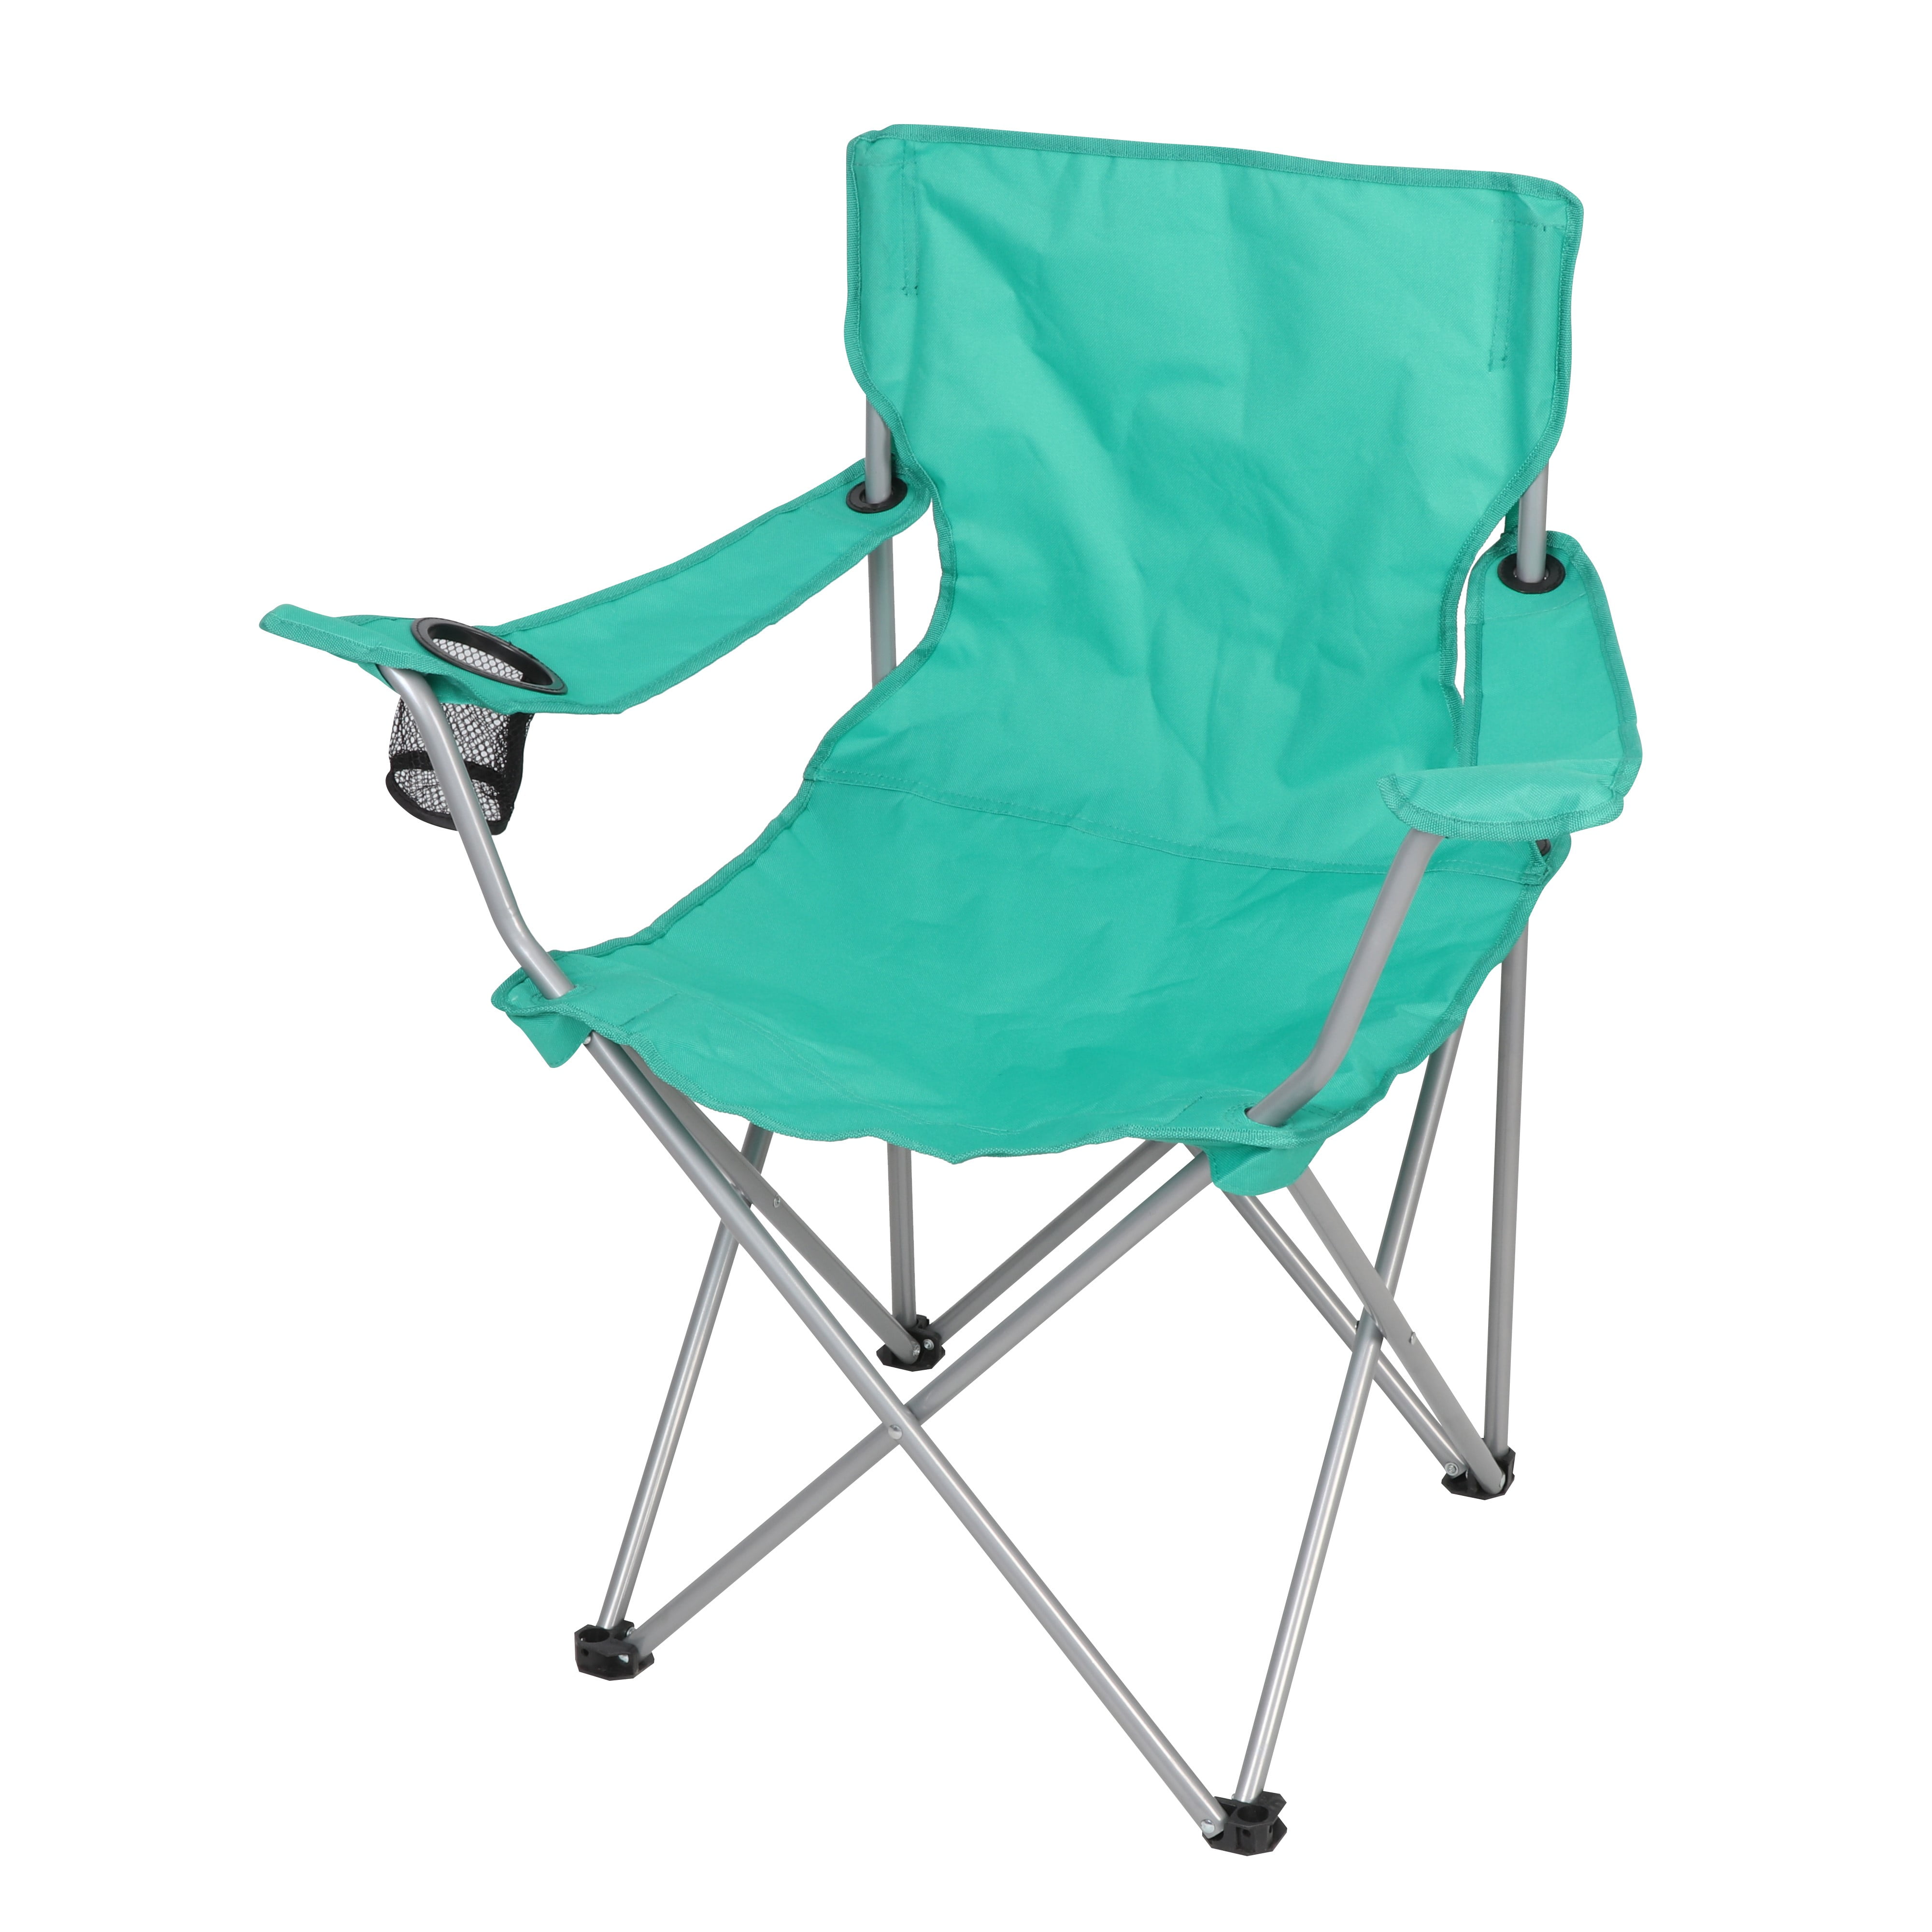 teenager Uretfærdig I de fleste tilfælde Ozark Trail Basic Quad Folding Camp Chair with Cup Holder, Teal, Outdoor -  Walmart.com